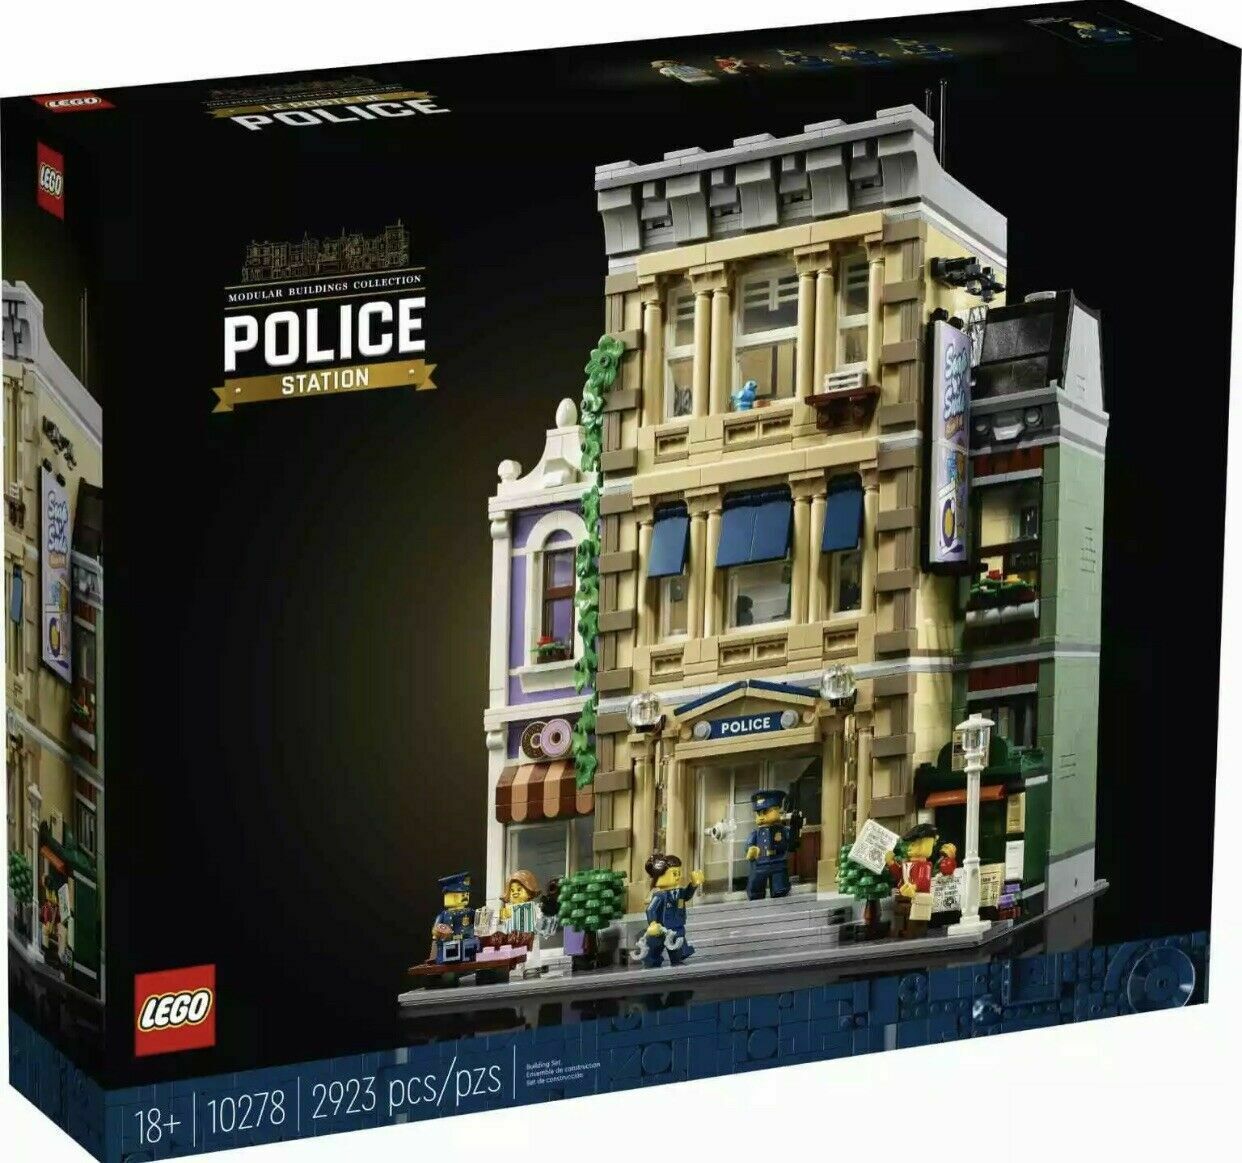 LEGO 10278 STAZIONE DI POLIZIA CREATOR